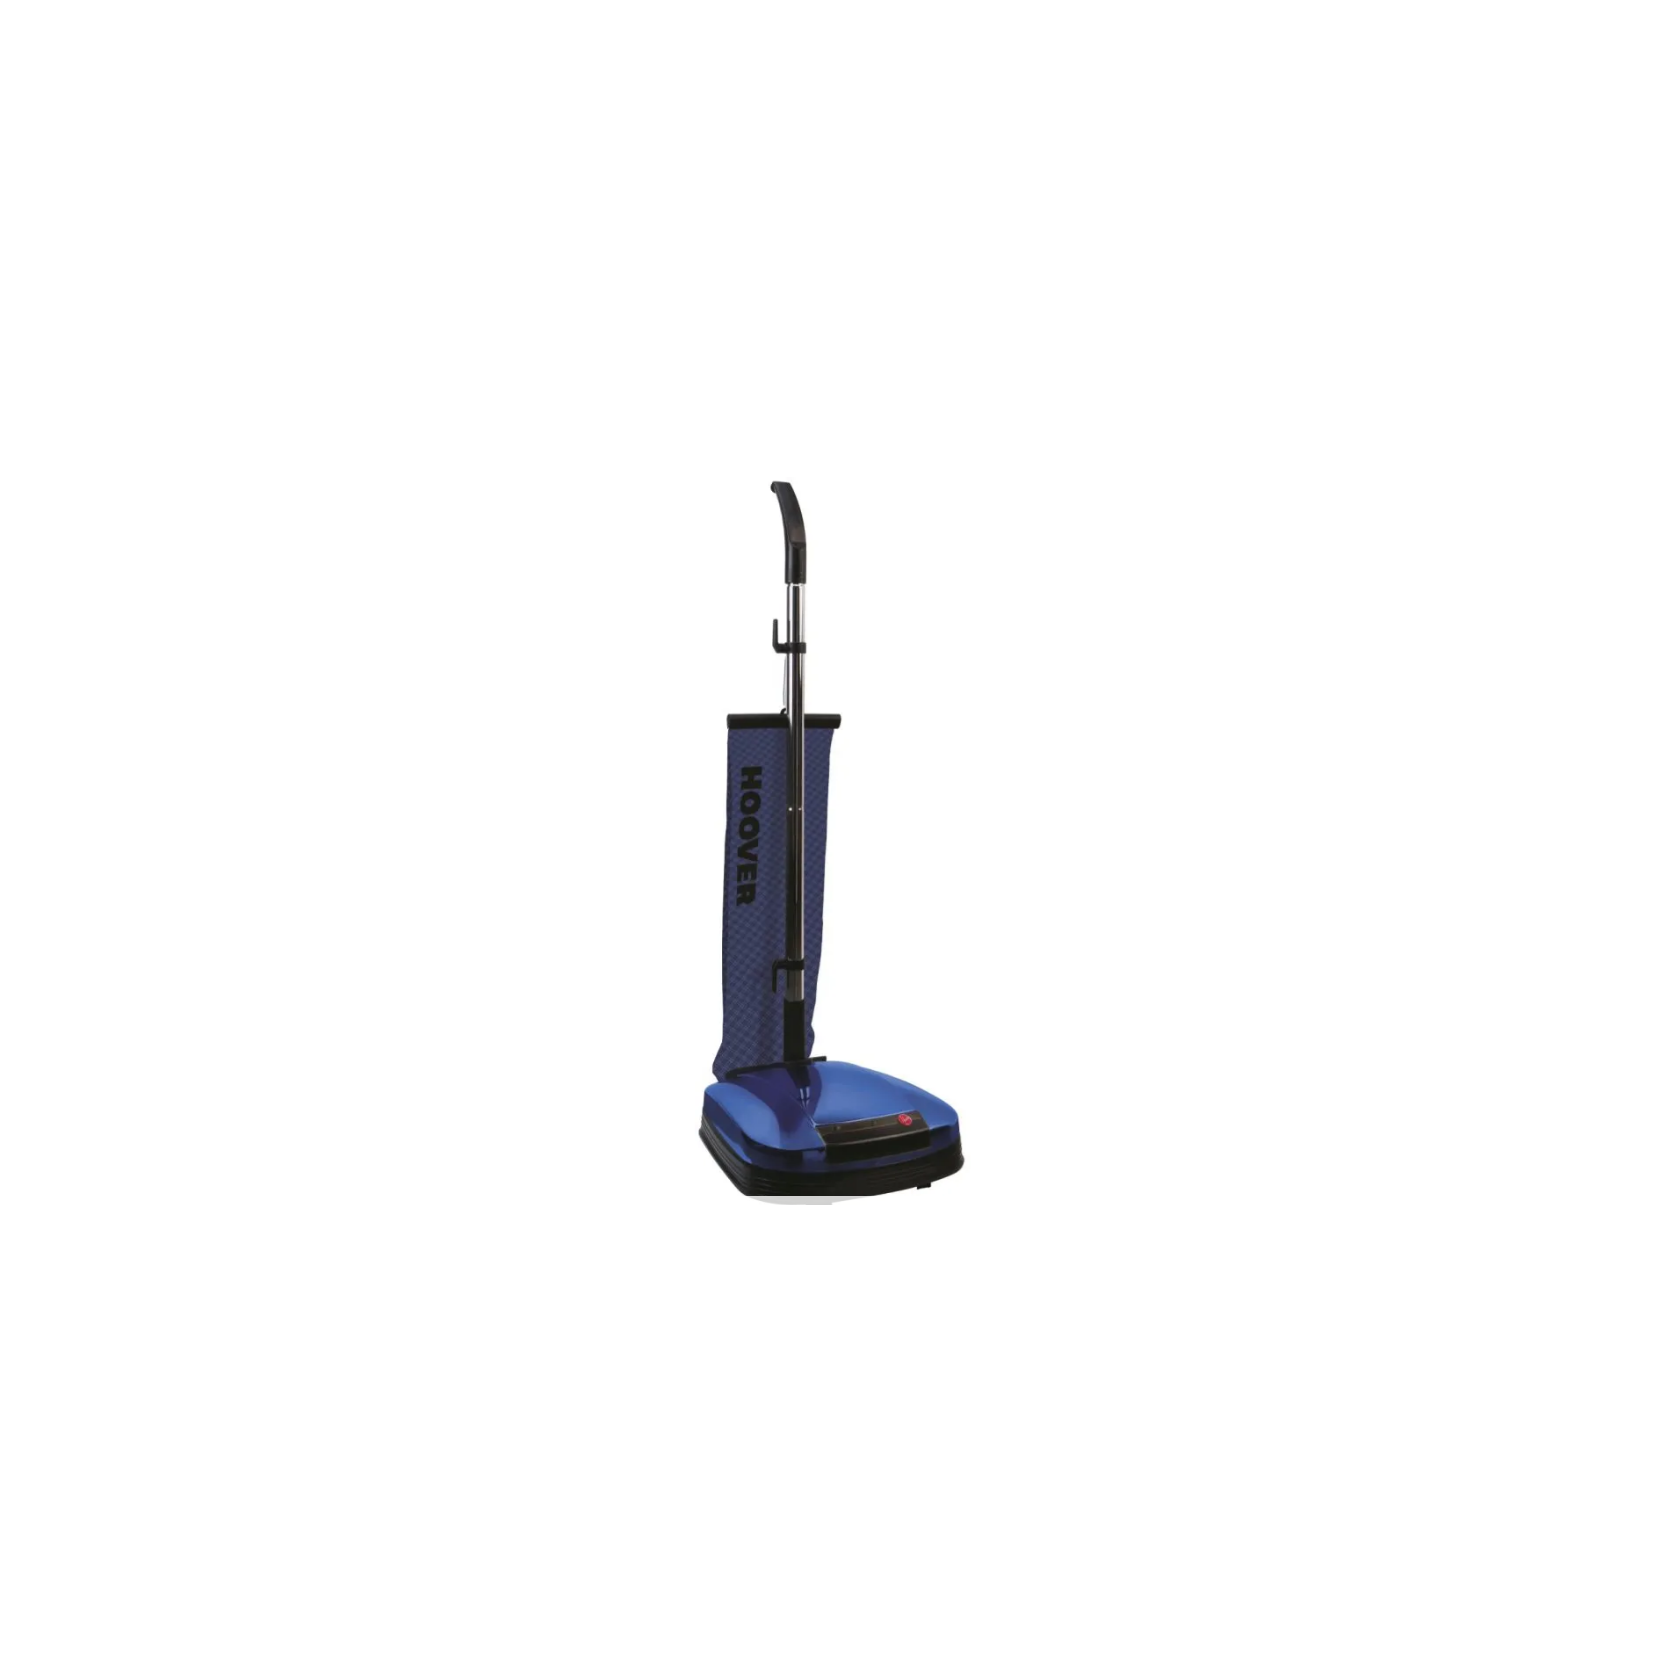 Hoover Lucidatrice Pavimenti con Sacco Potenza 600 Watt Pavimenti Duri Marmo  colore Blu - F3860/1 011